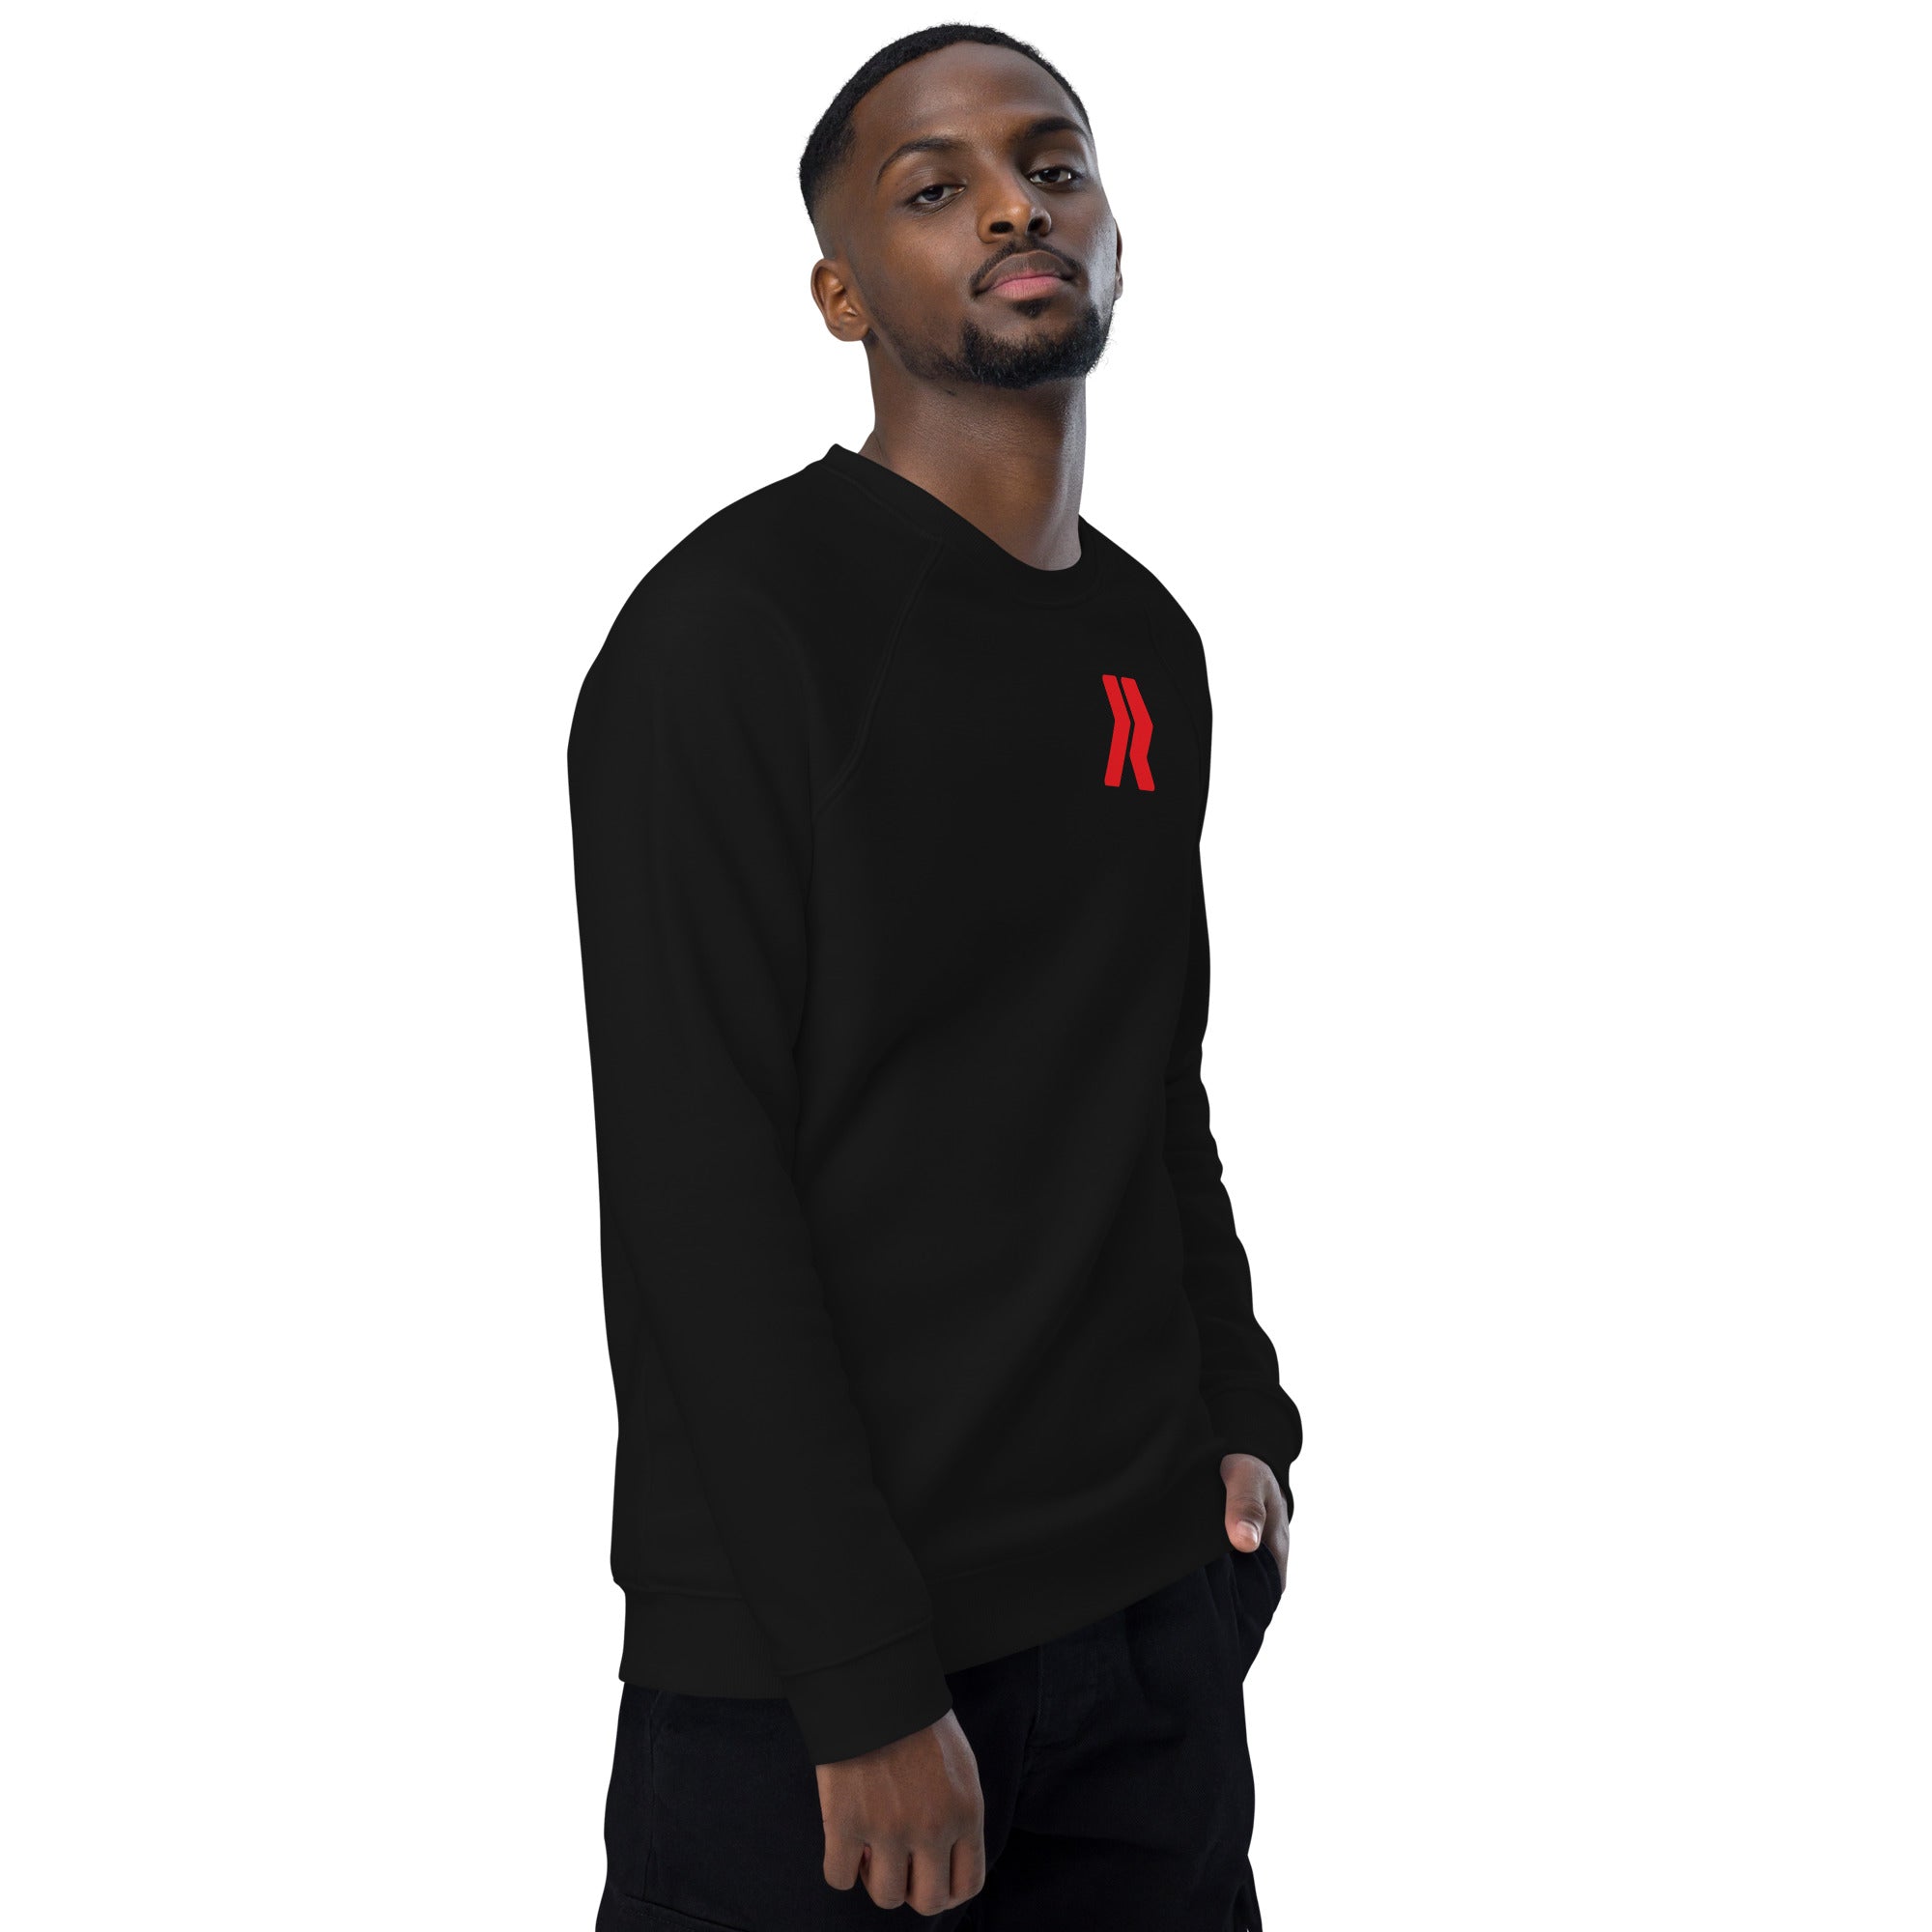 Carrollwood Logo R - R/W - Black Unisex organic raglan sweatshirt